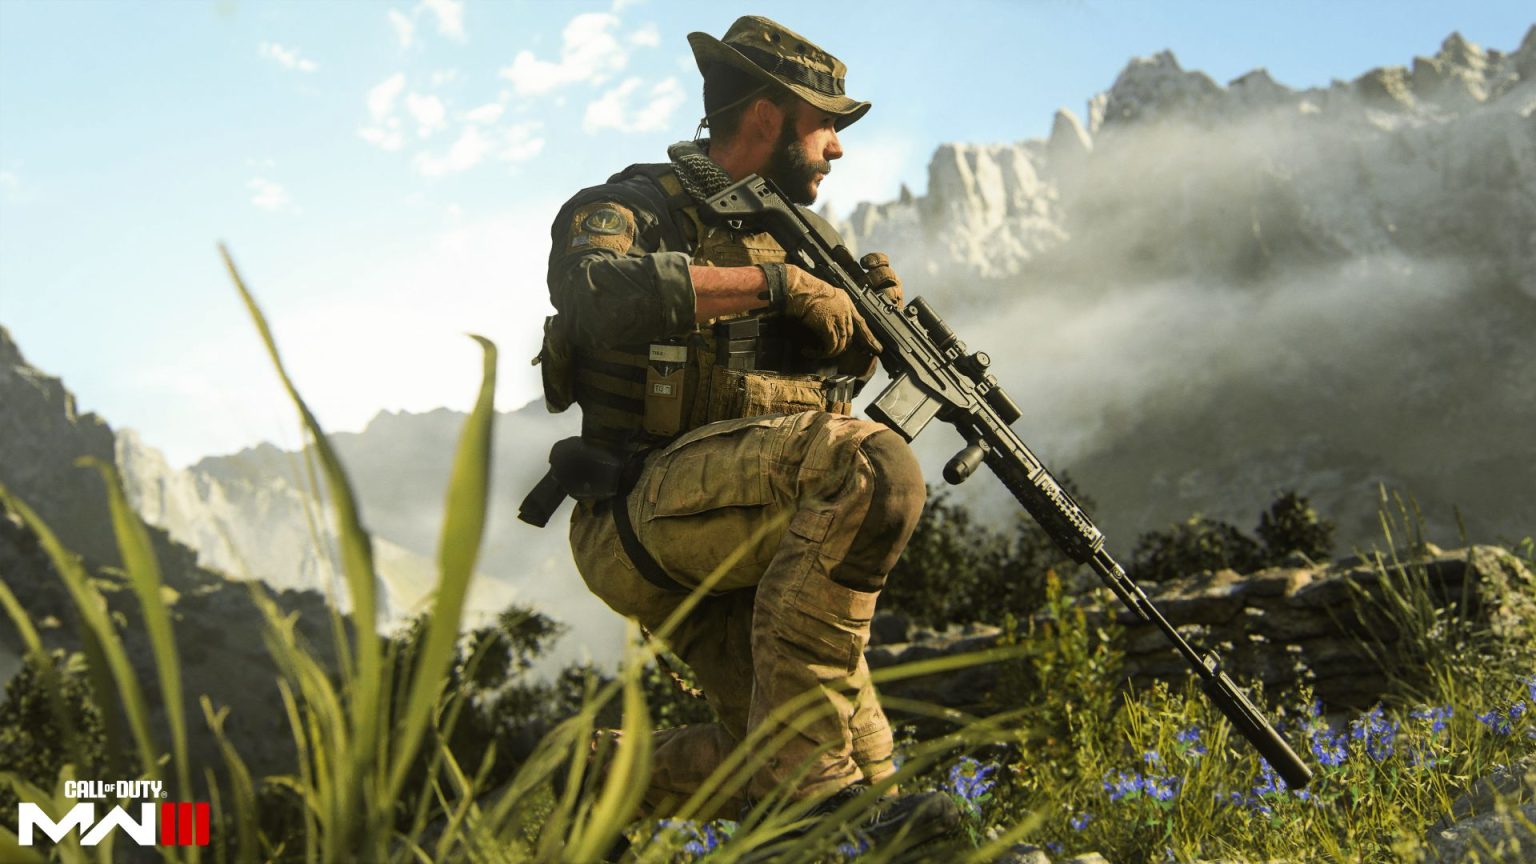 اکتیویژن: حجم عظیم Modern Warfare 3 به دلیل افزایش محتوا است
